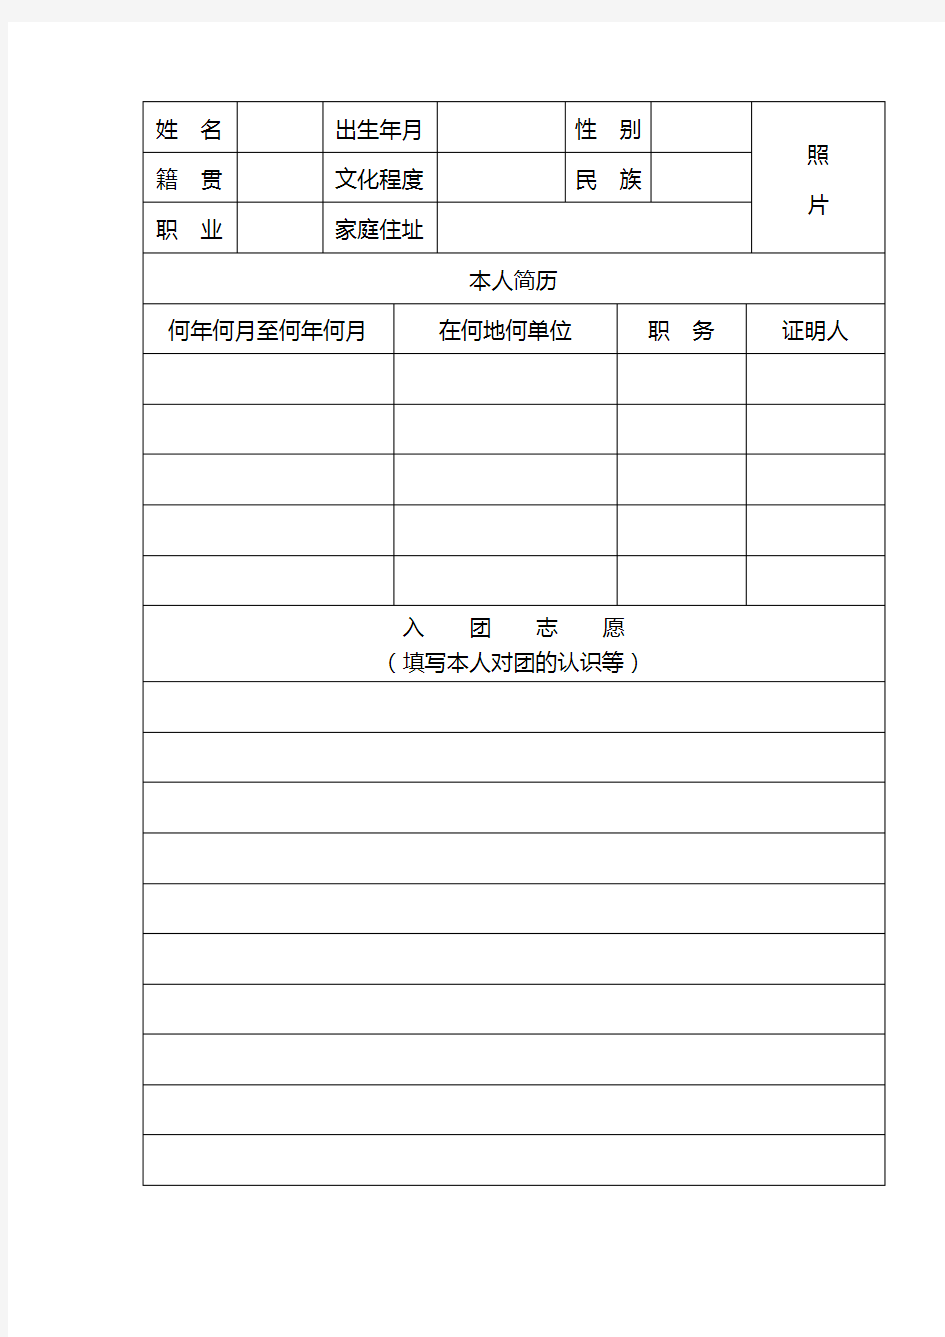 入团志愿书表格下载(可以直接打印)